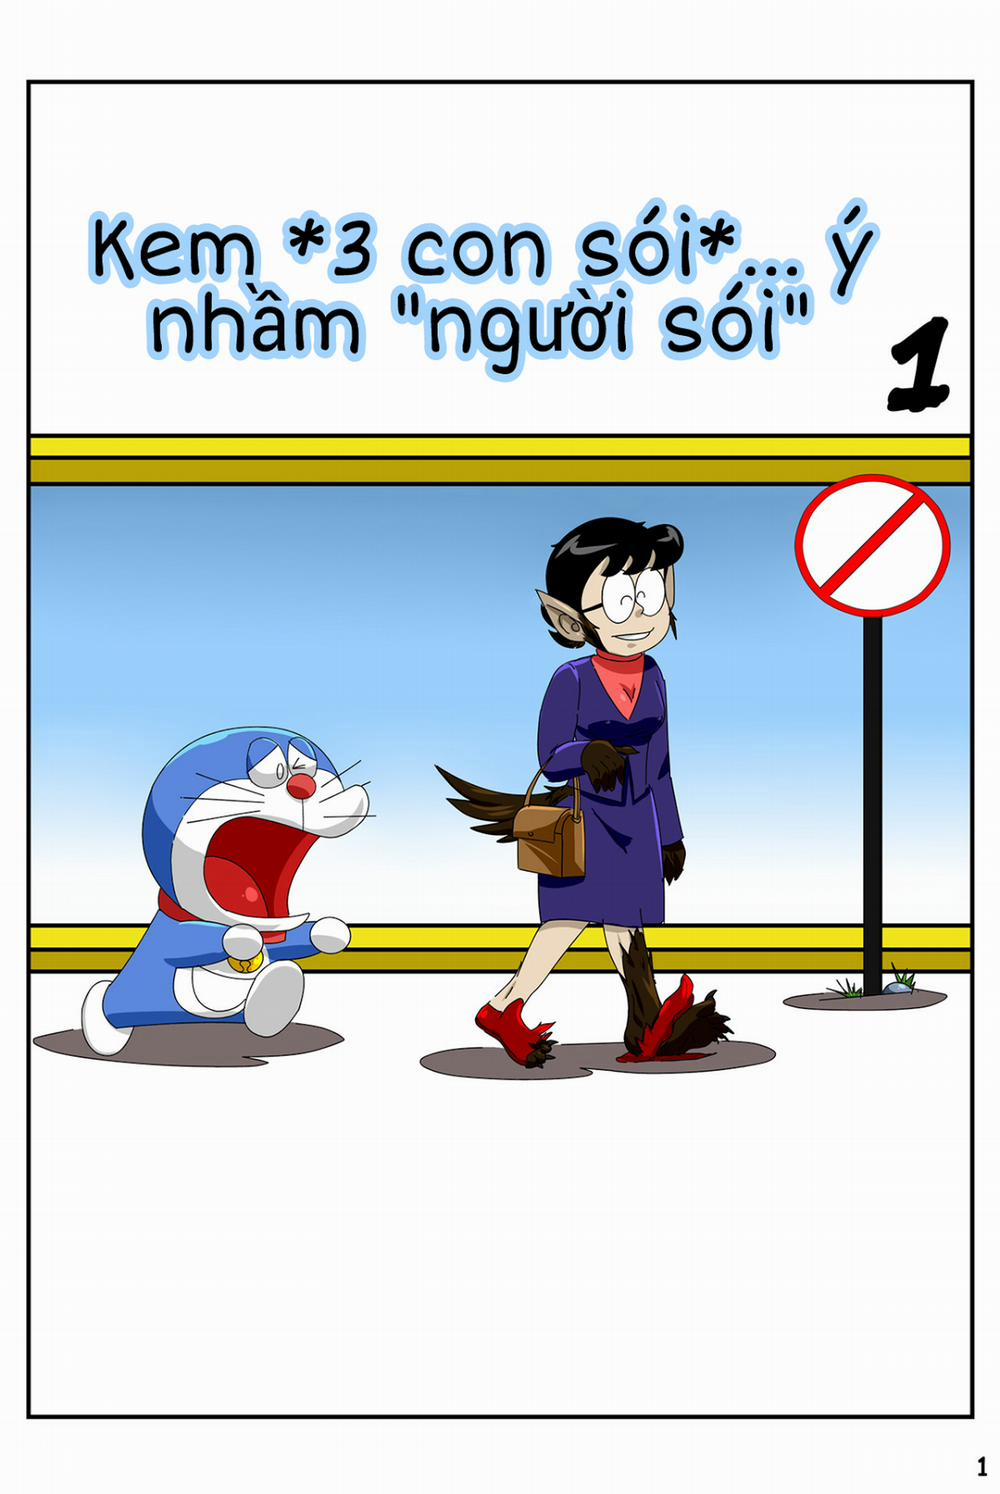 Tuyển Tập Doraemon Doujinshi 18+ Chương 19 Kem ch s i 1 Trang 3